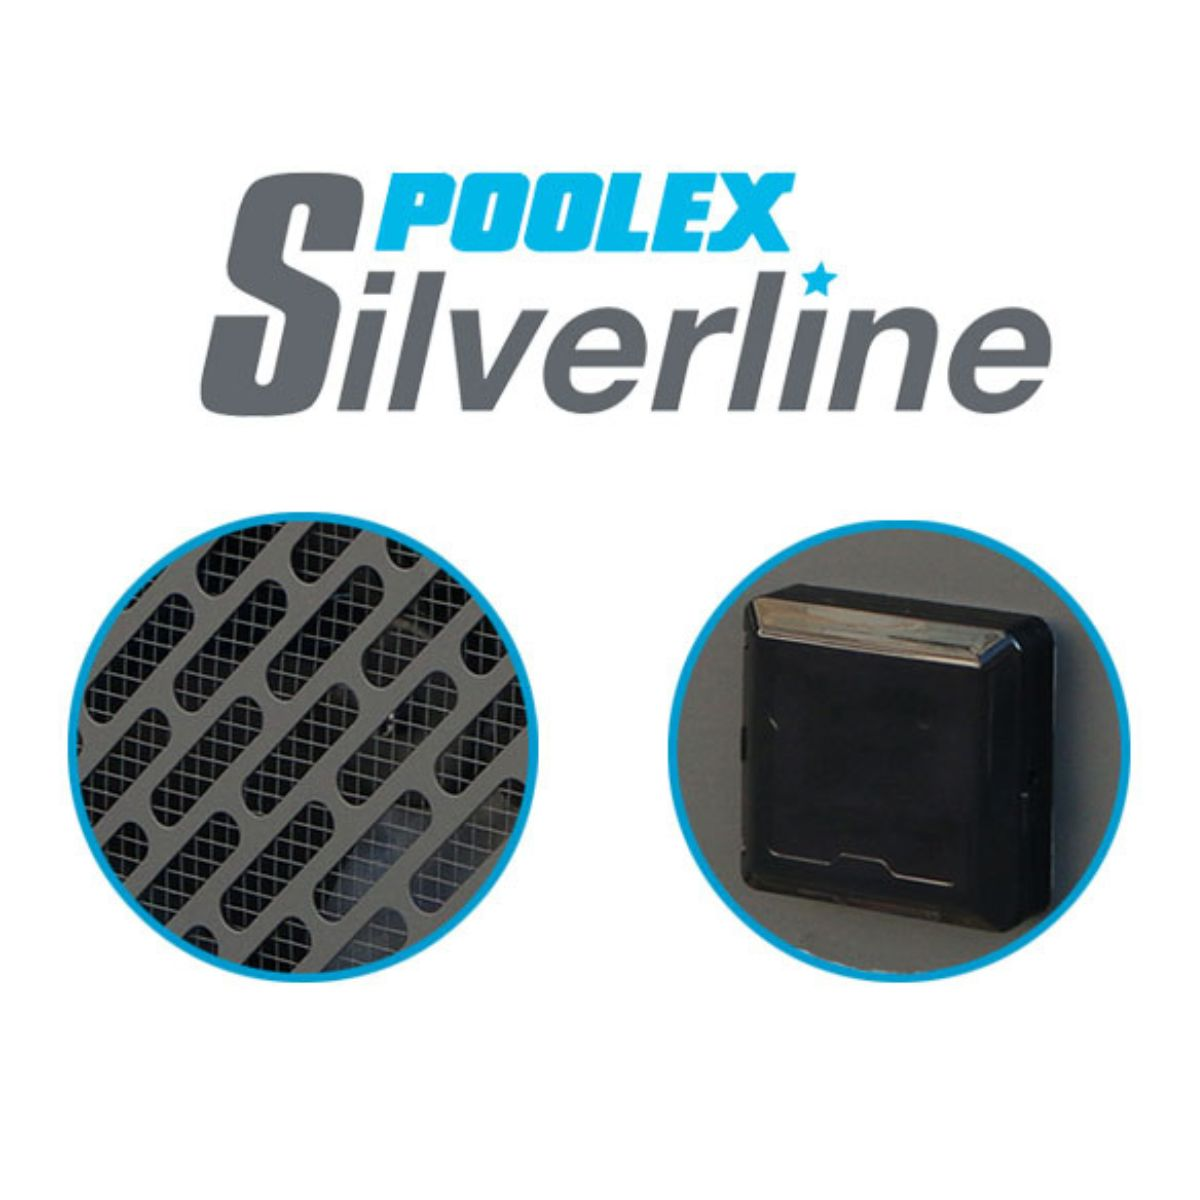 220 Schwimmbadpumpe POOLEX Silverline